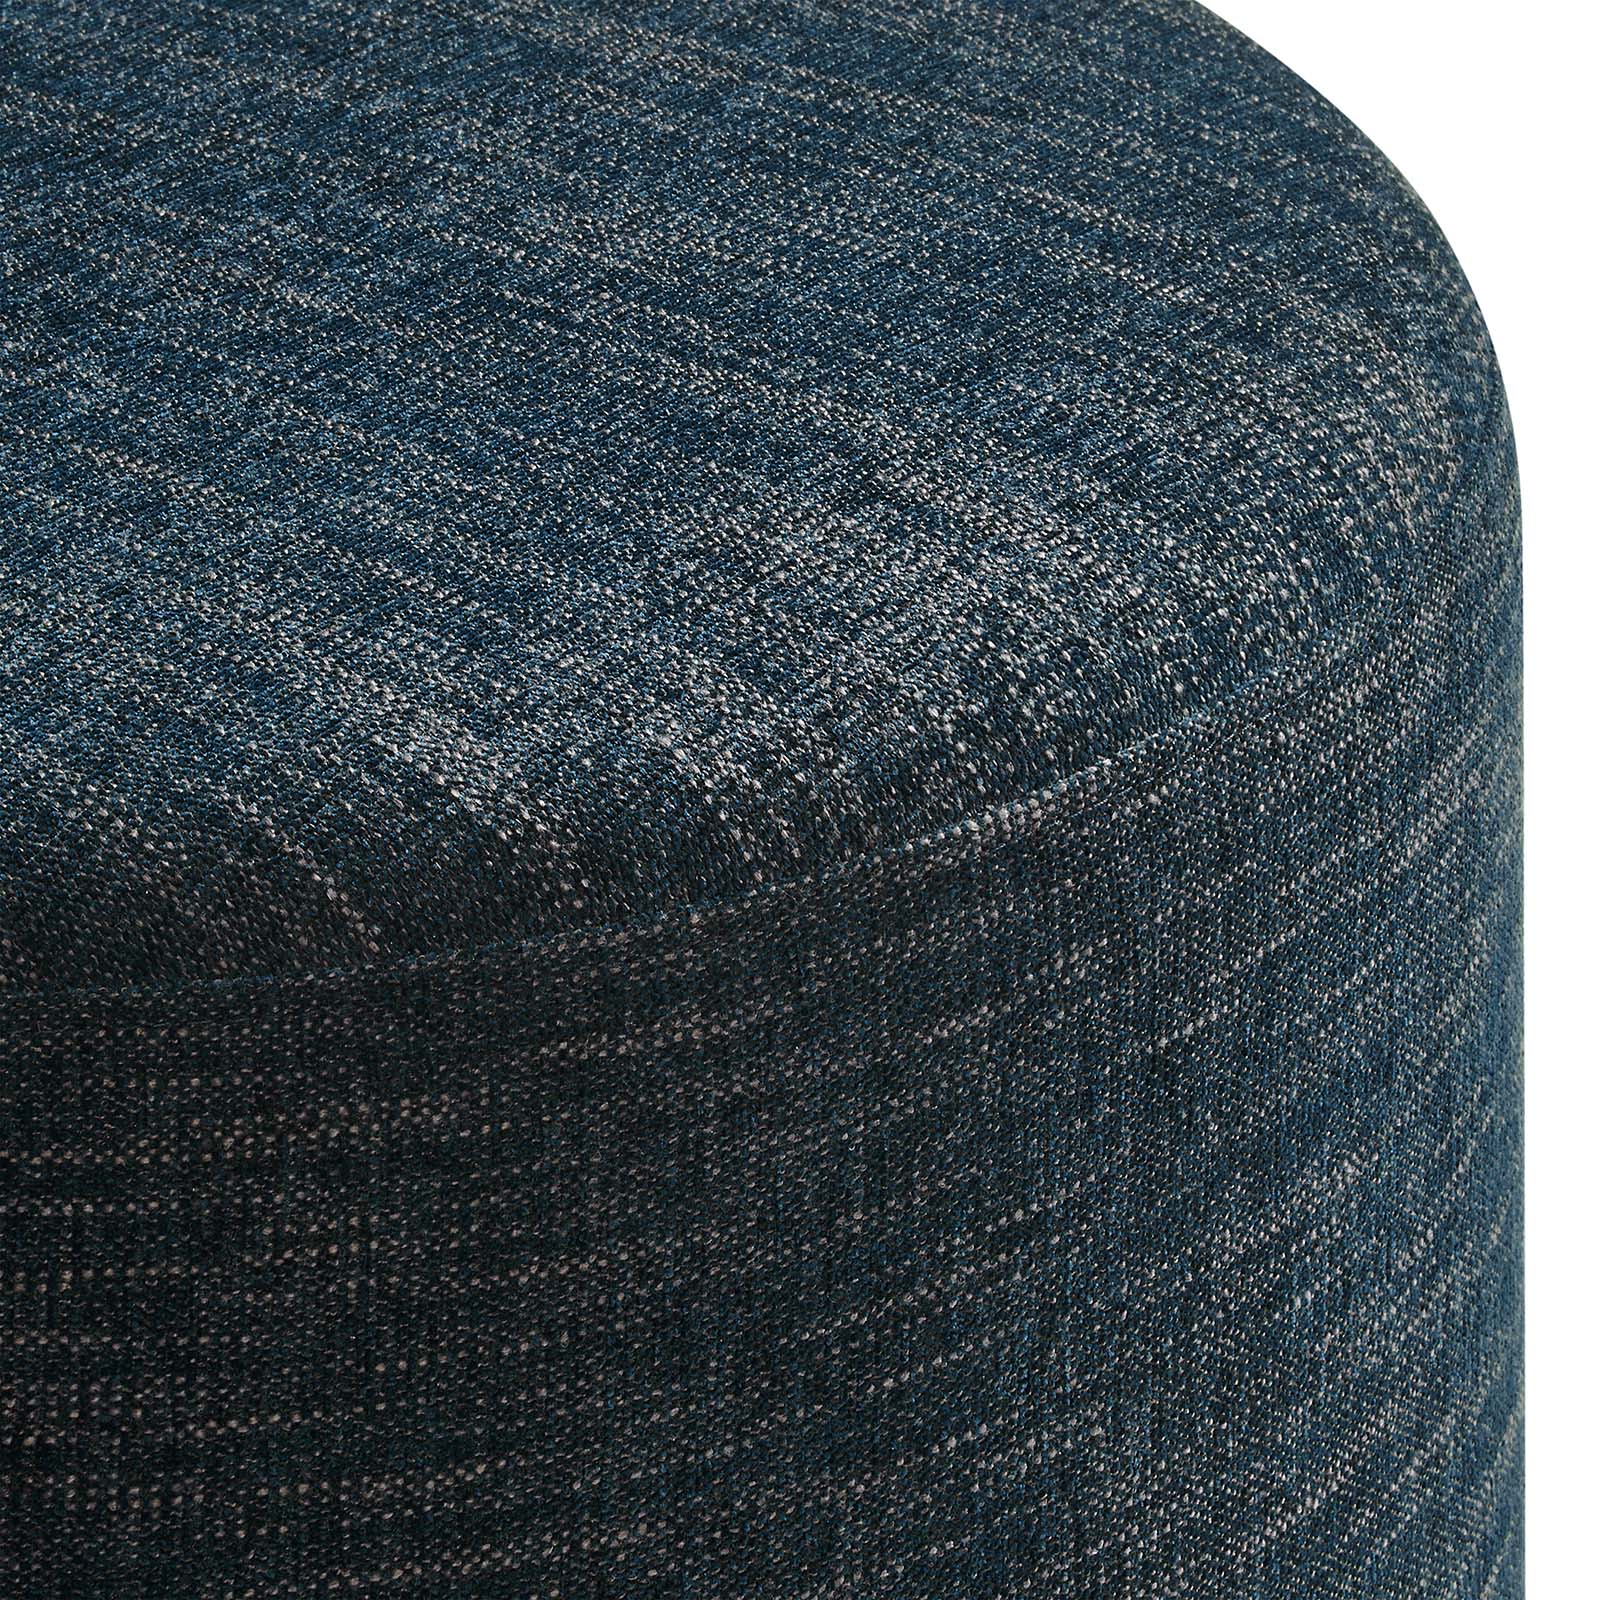 Callum Large 23" Round Woven Heathered Fabric Upholstered Ottoman-Ottoman-Modway-Wall2Wall Furnishings